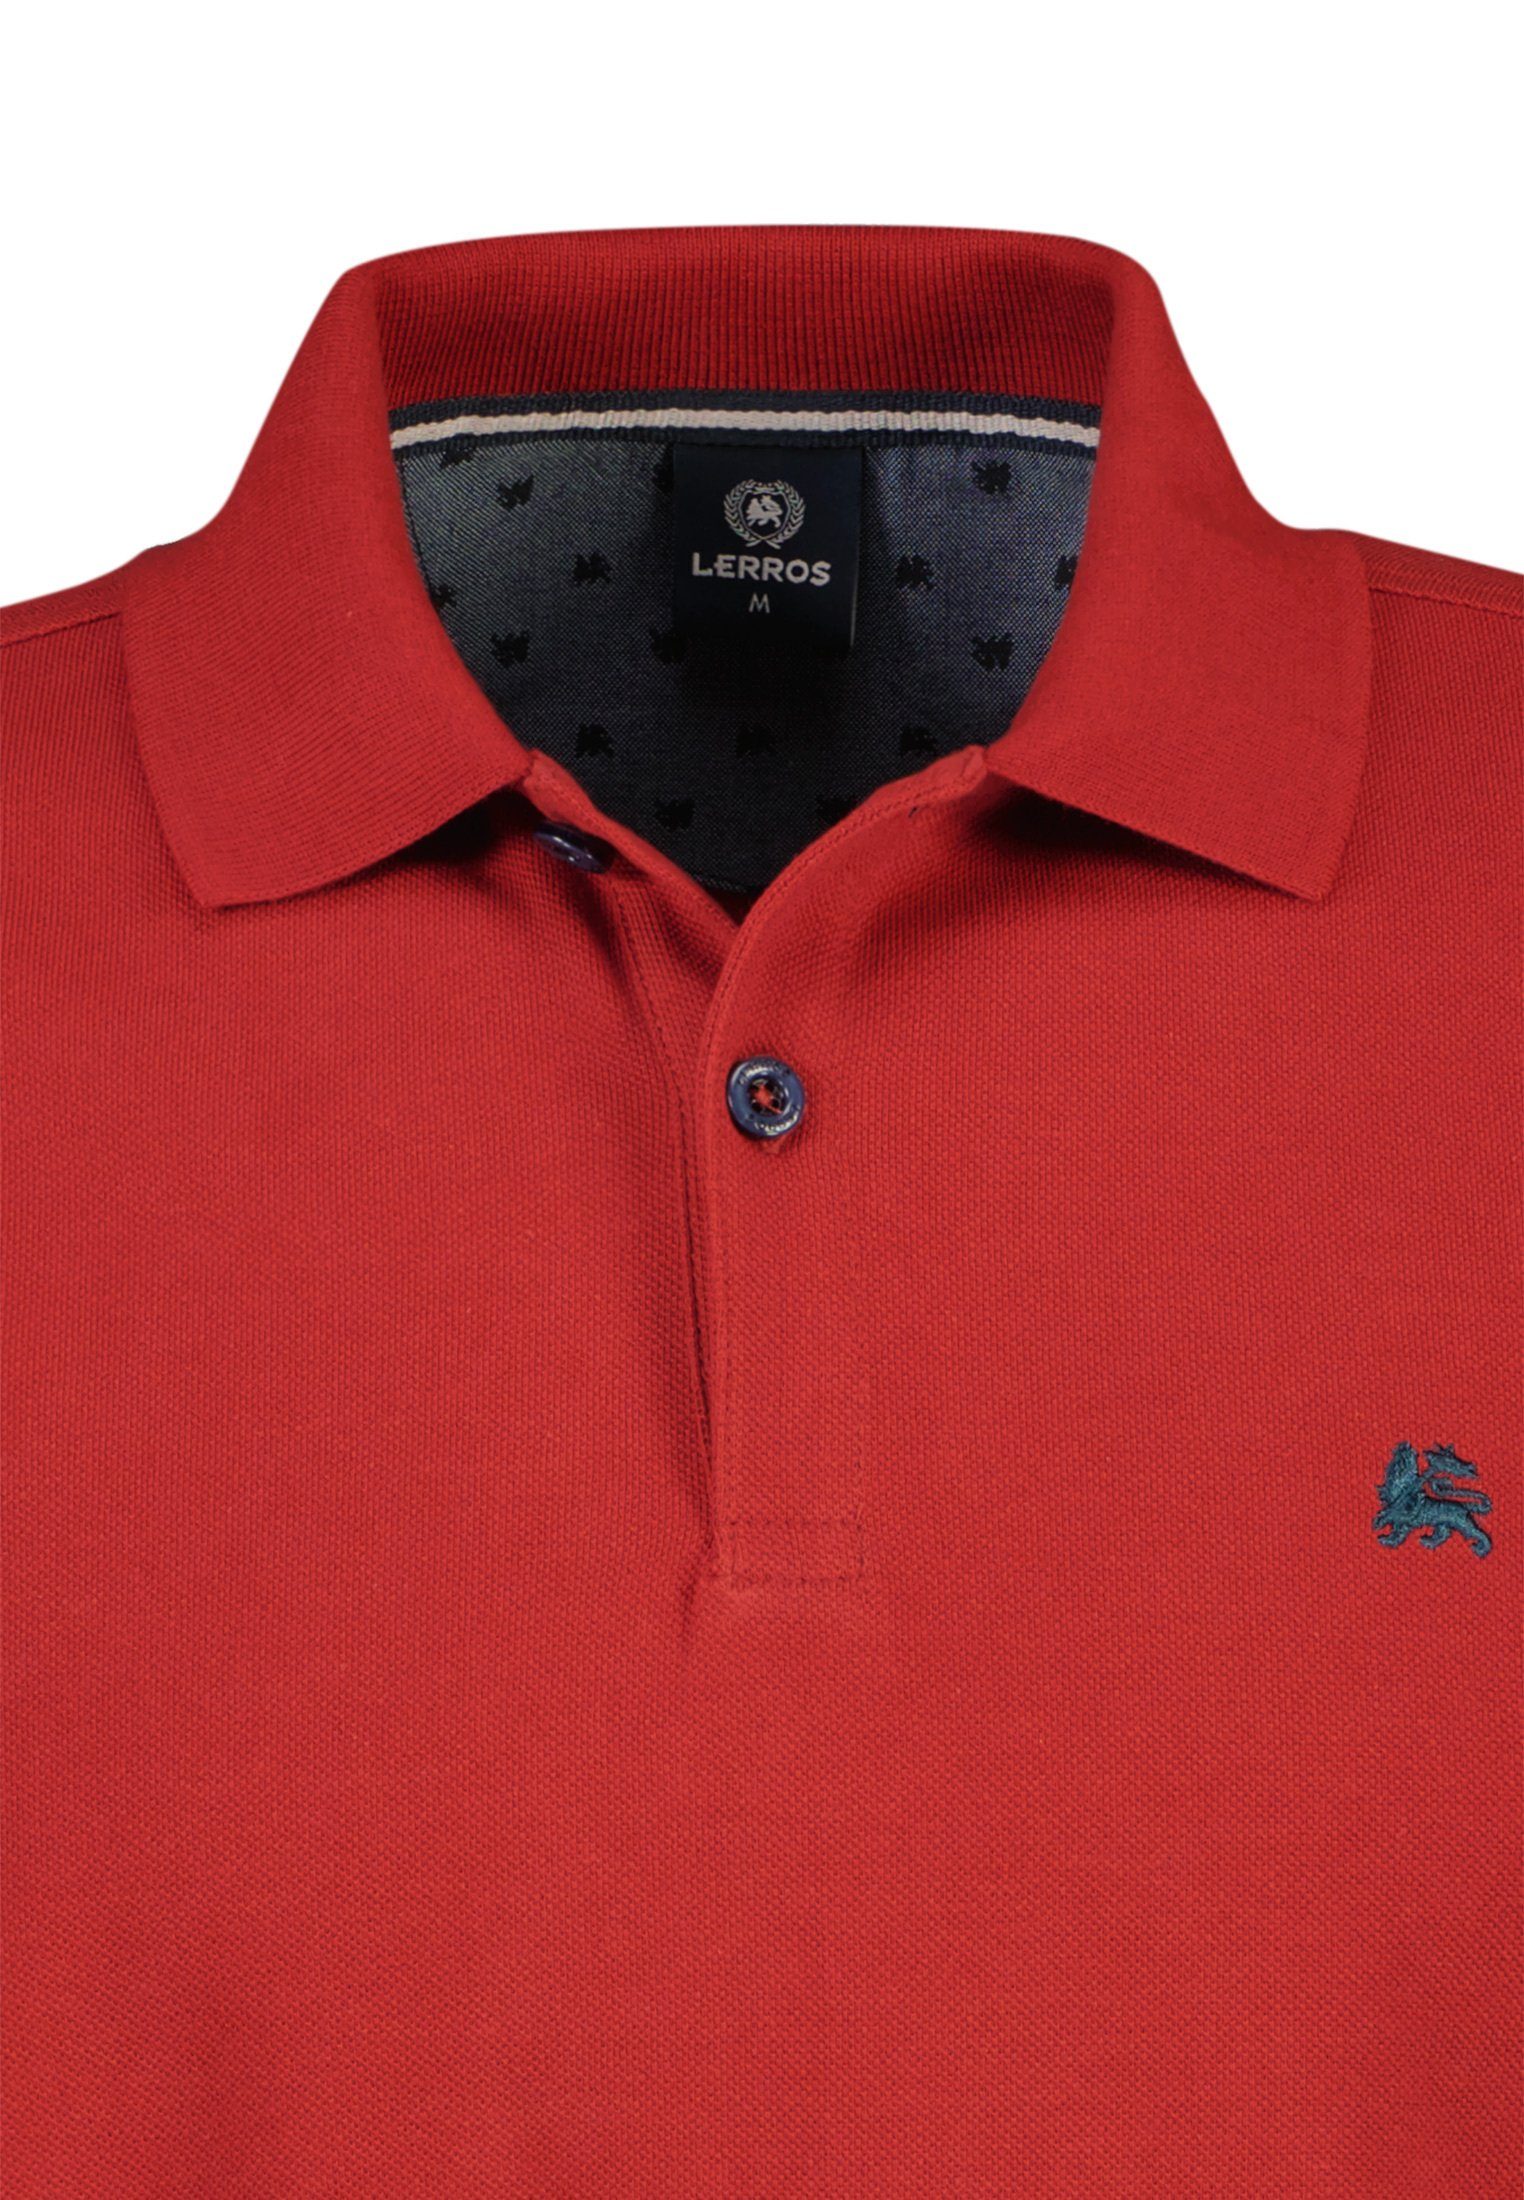 Poloshirt LERROS in RED BCI Piqué-Baumwollqualität, hochwertiger RUSTY LERROS Poloshirt